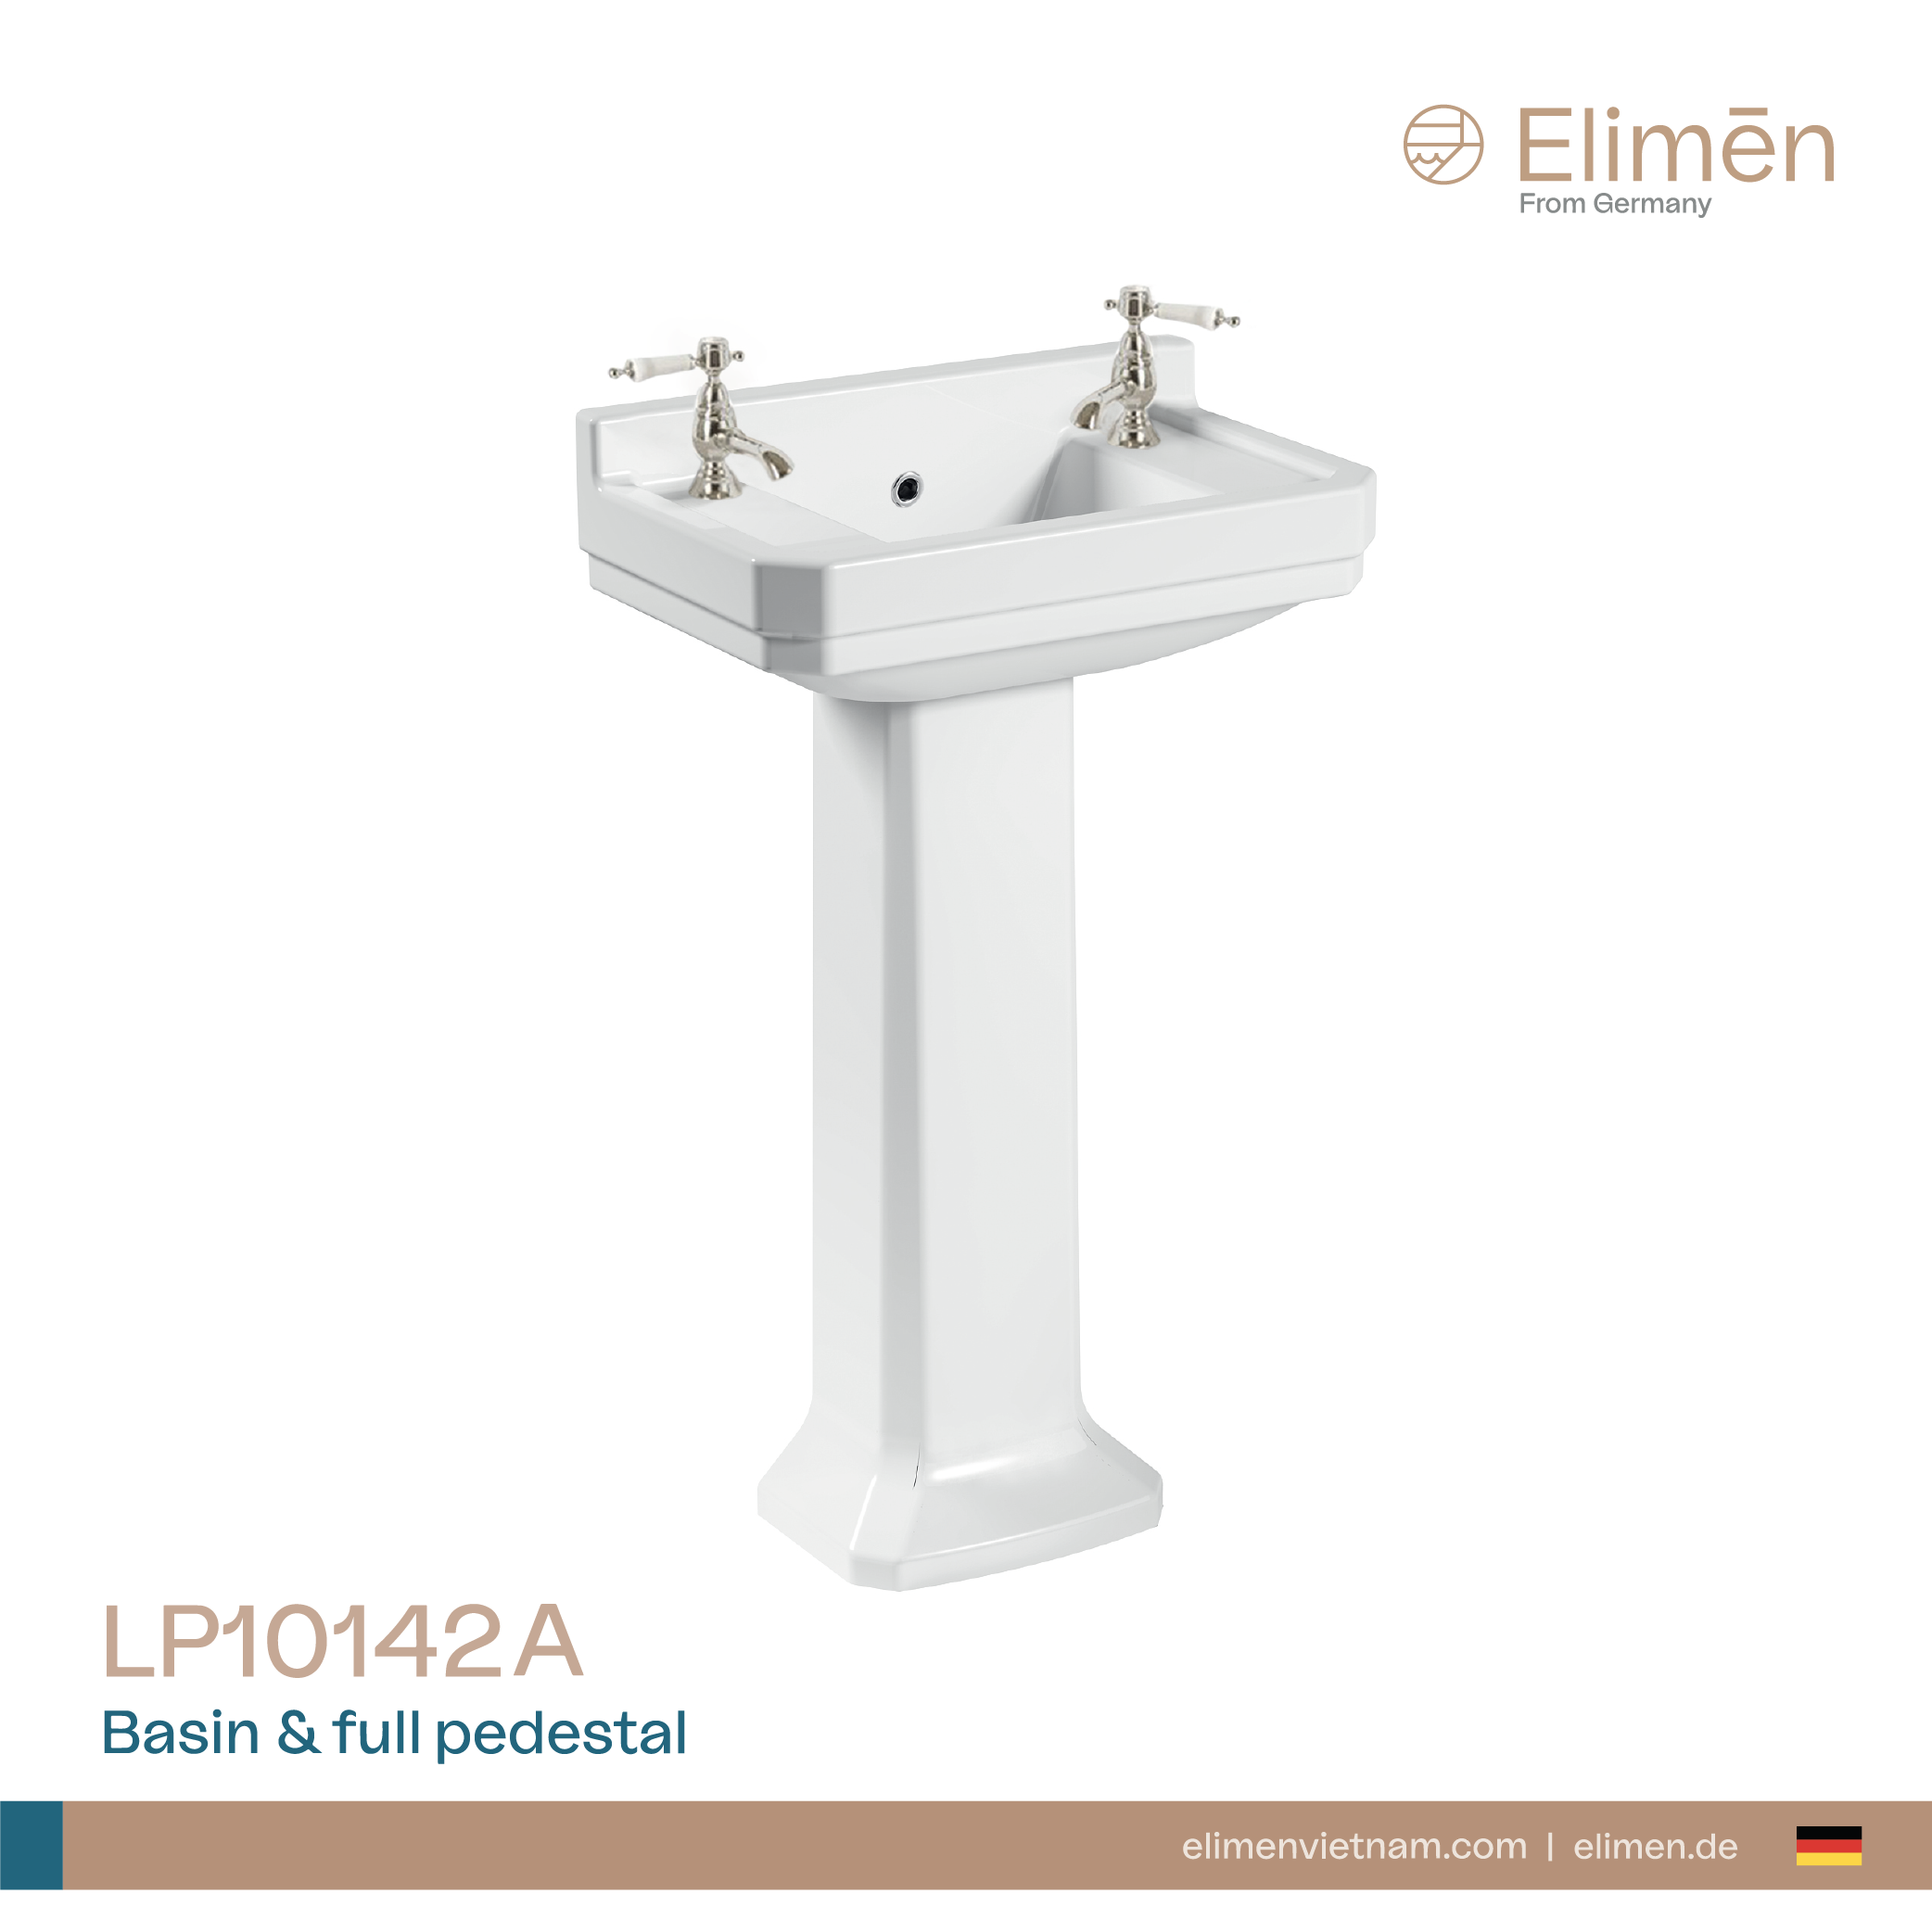 Elimen long-walled washbasin - Code LP10142A